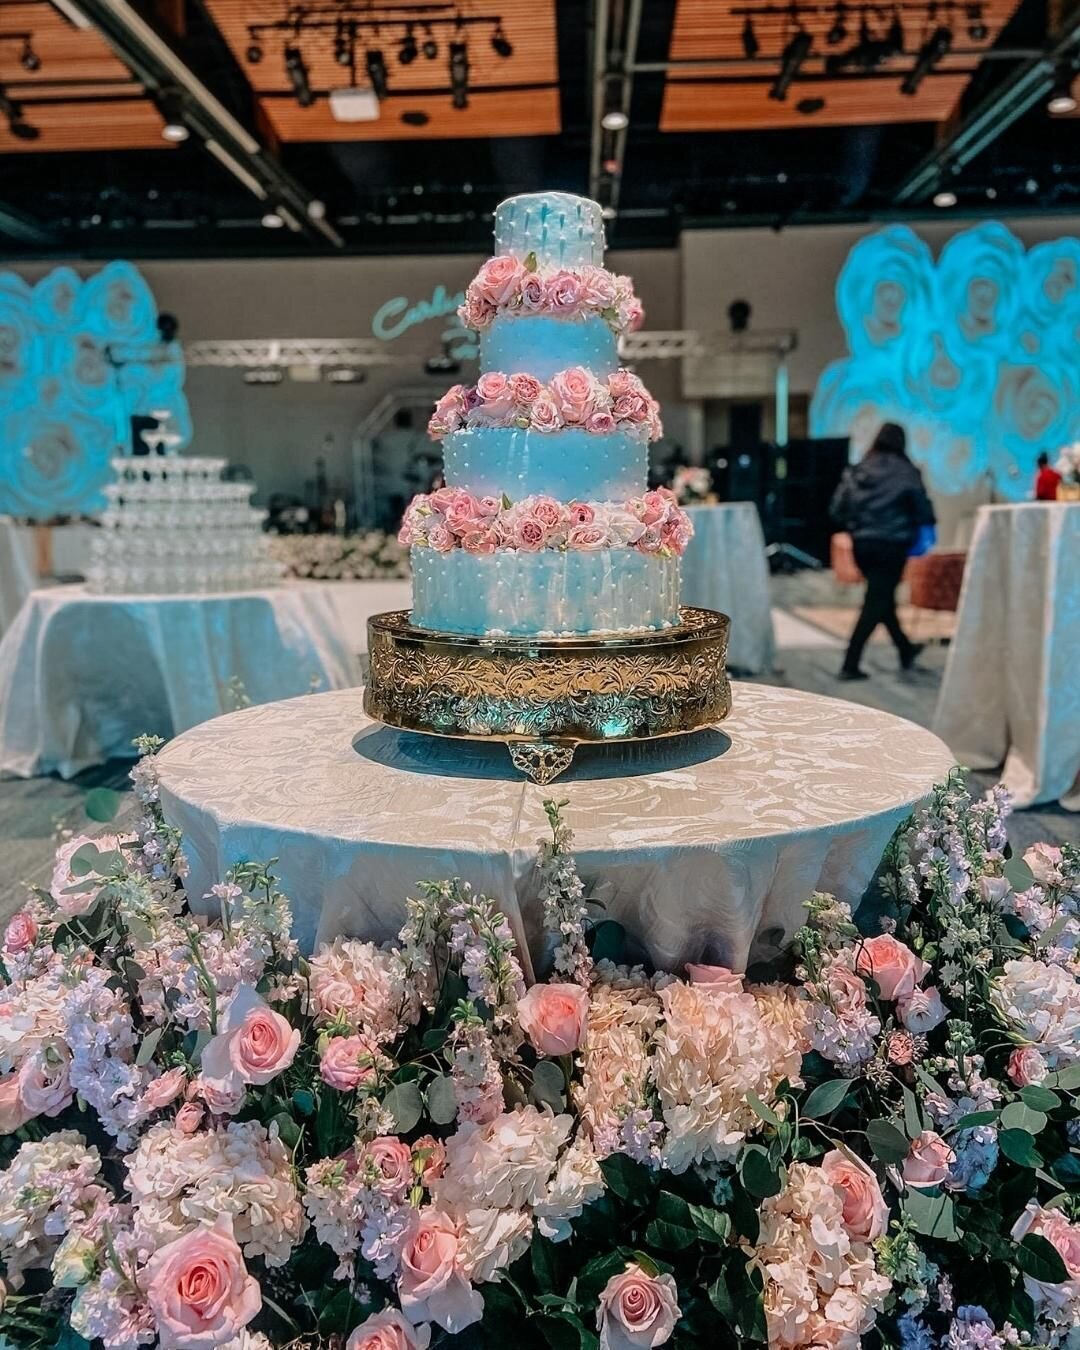 We love some flowers with our cake! #cakesbycathyyoung #wedding #weddingcake #cake #cakedesign #cakedesigner #cakesofinstagram #sanantonioweddings #weddingsinsanantonio